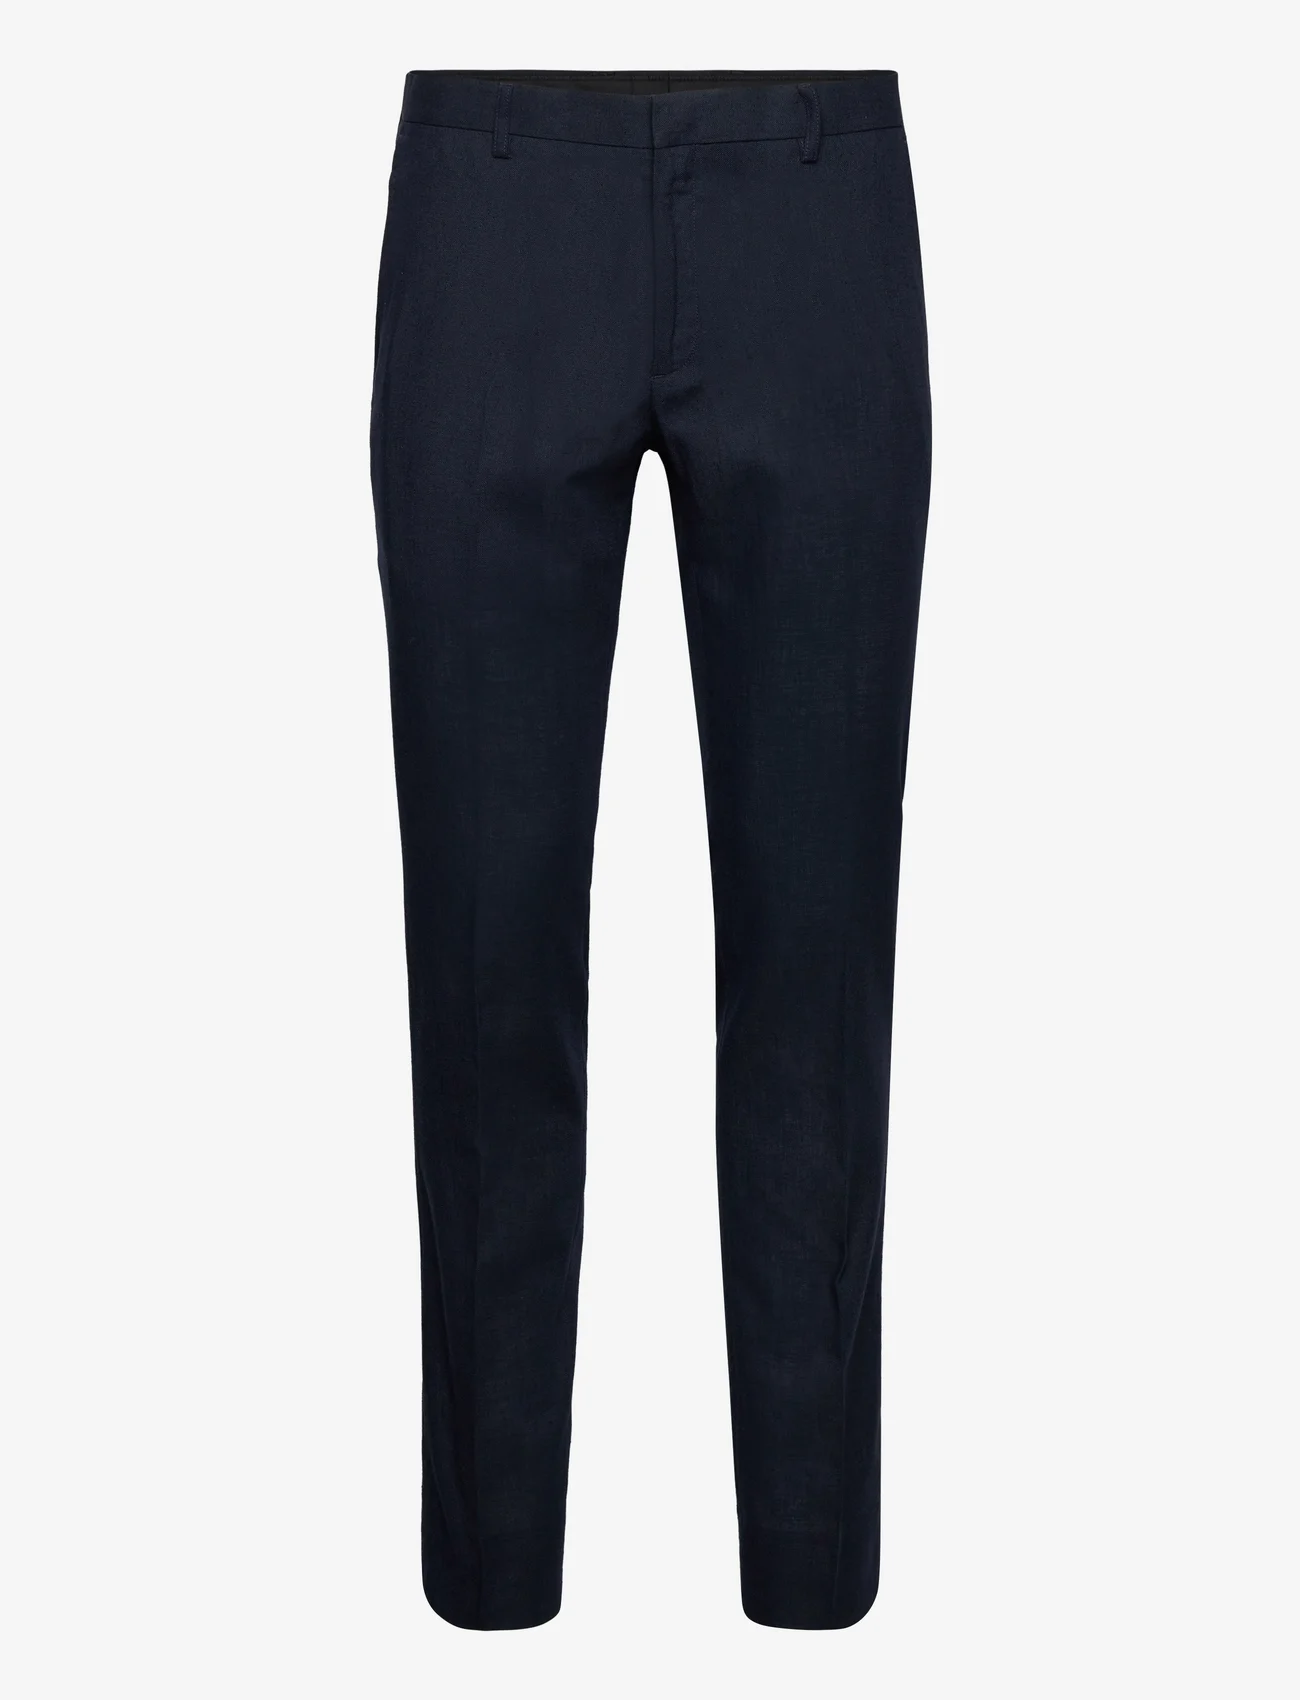 Bruun & Stengade - BS Pollino Classic Fit Suit Pants - lininės kelnės - navy - 0